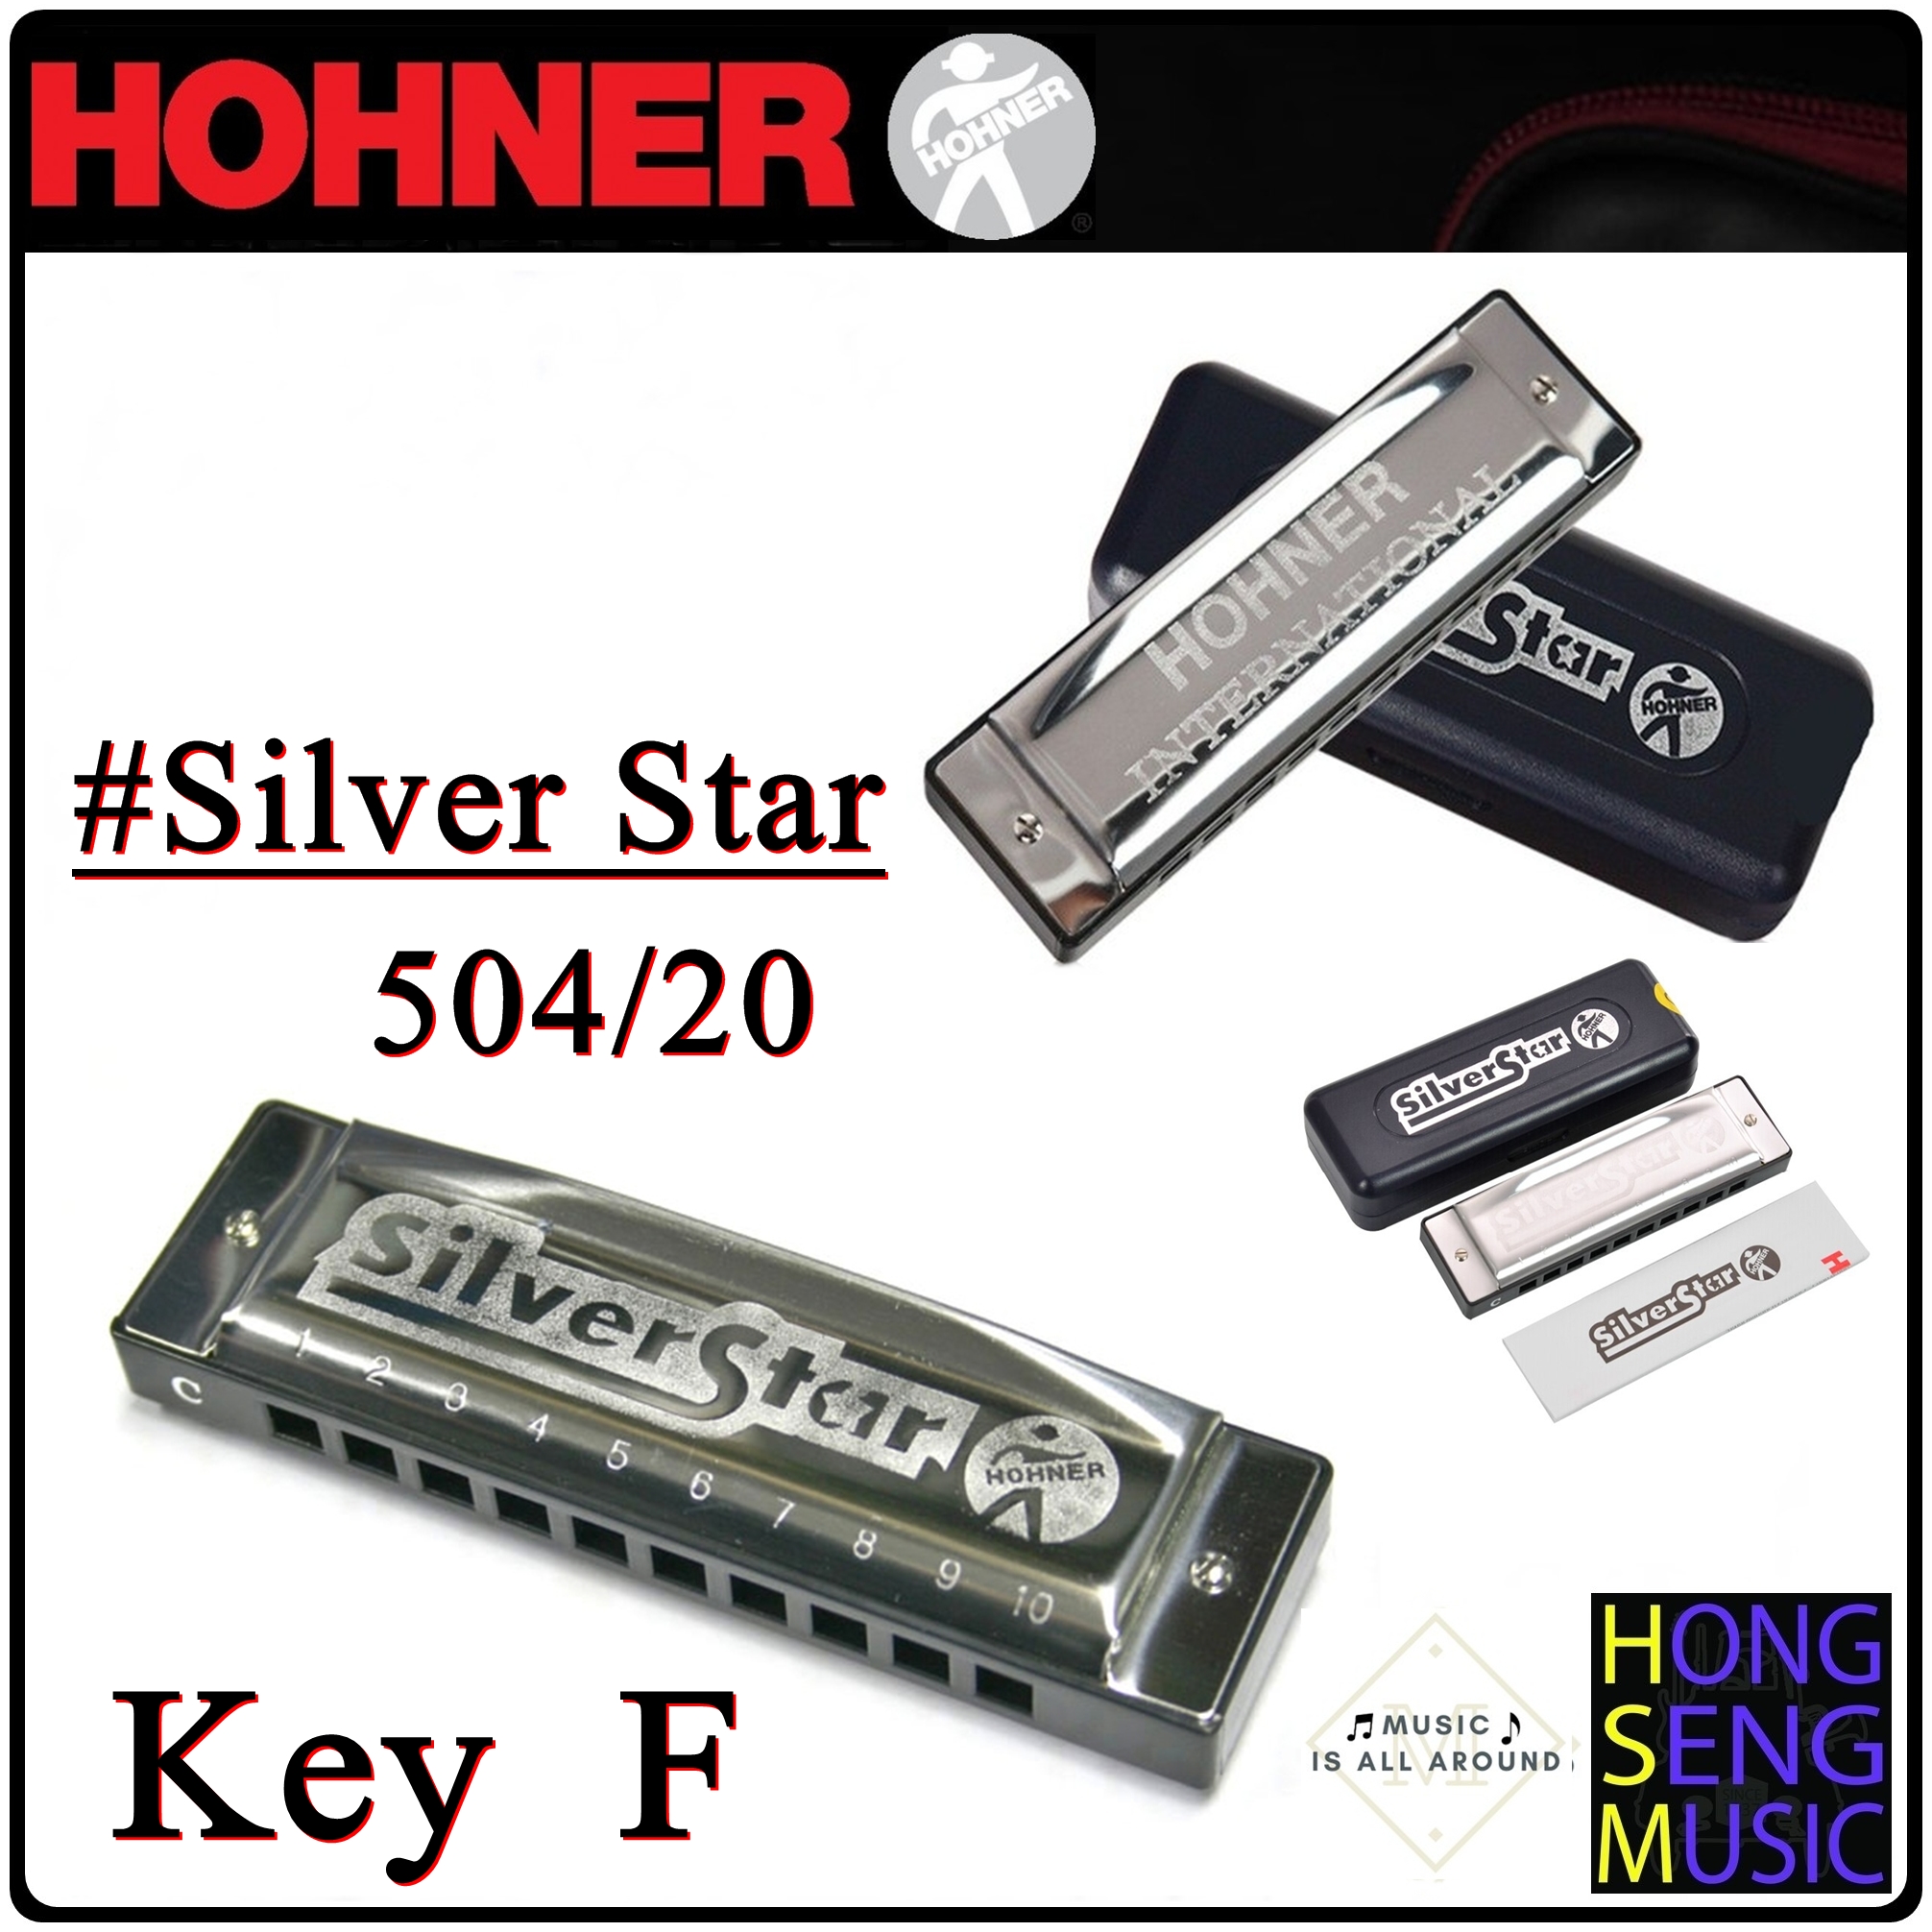 ฮาร์โมนิก้า (เม้าท์ออร์แกน) Hohner รุ่น Silver Star Harmonica 504/20 Key F